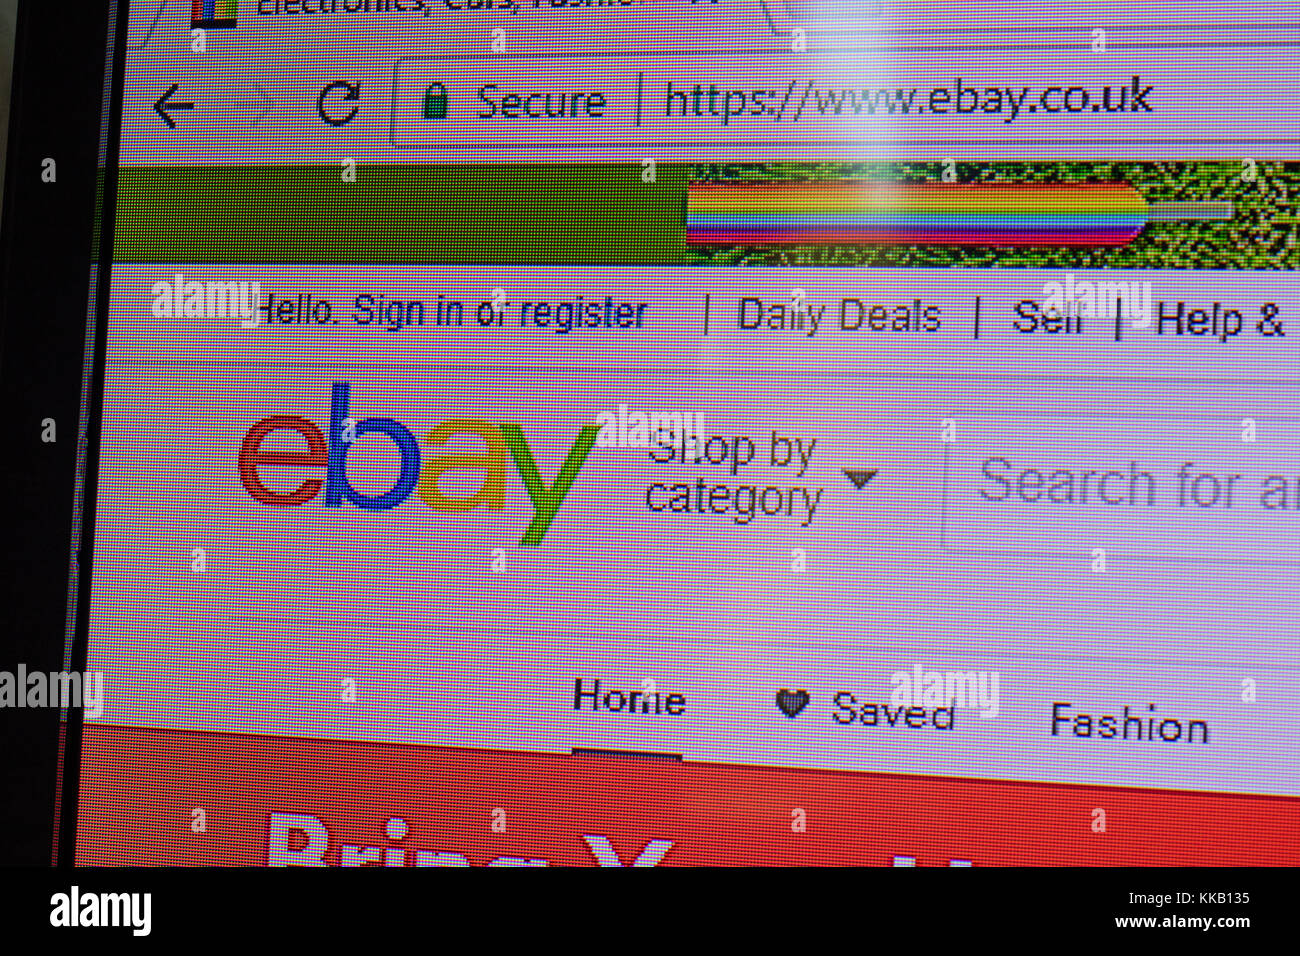 Close up de Ebay UK site web, comme vu sur un écran d'ordinateur, 2017 Banque D'Images